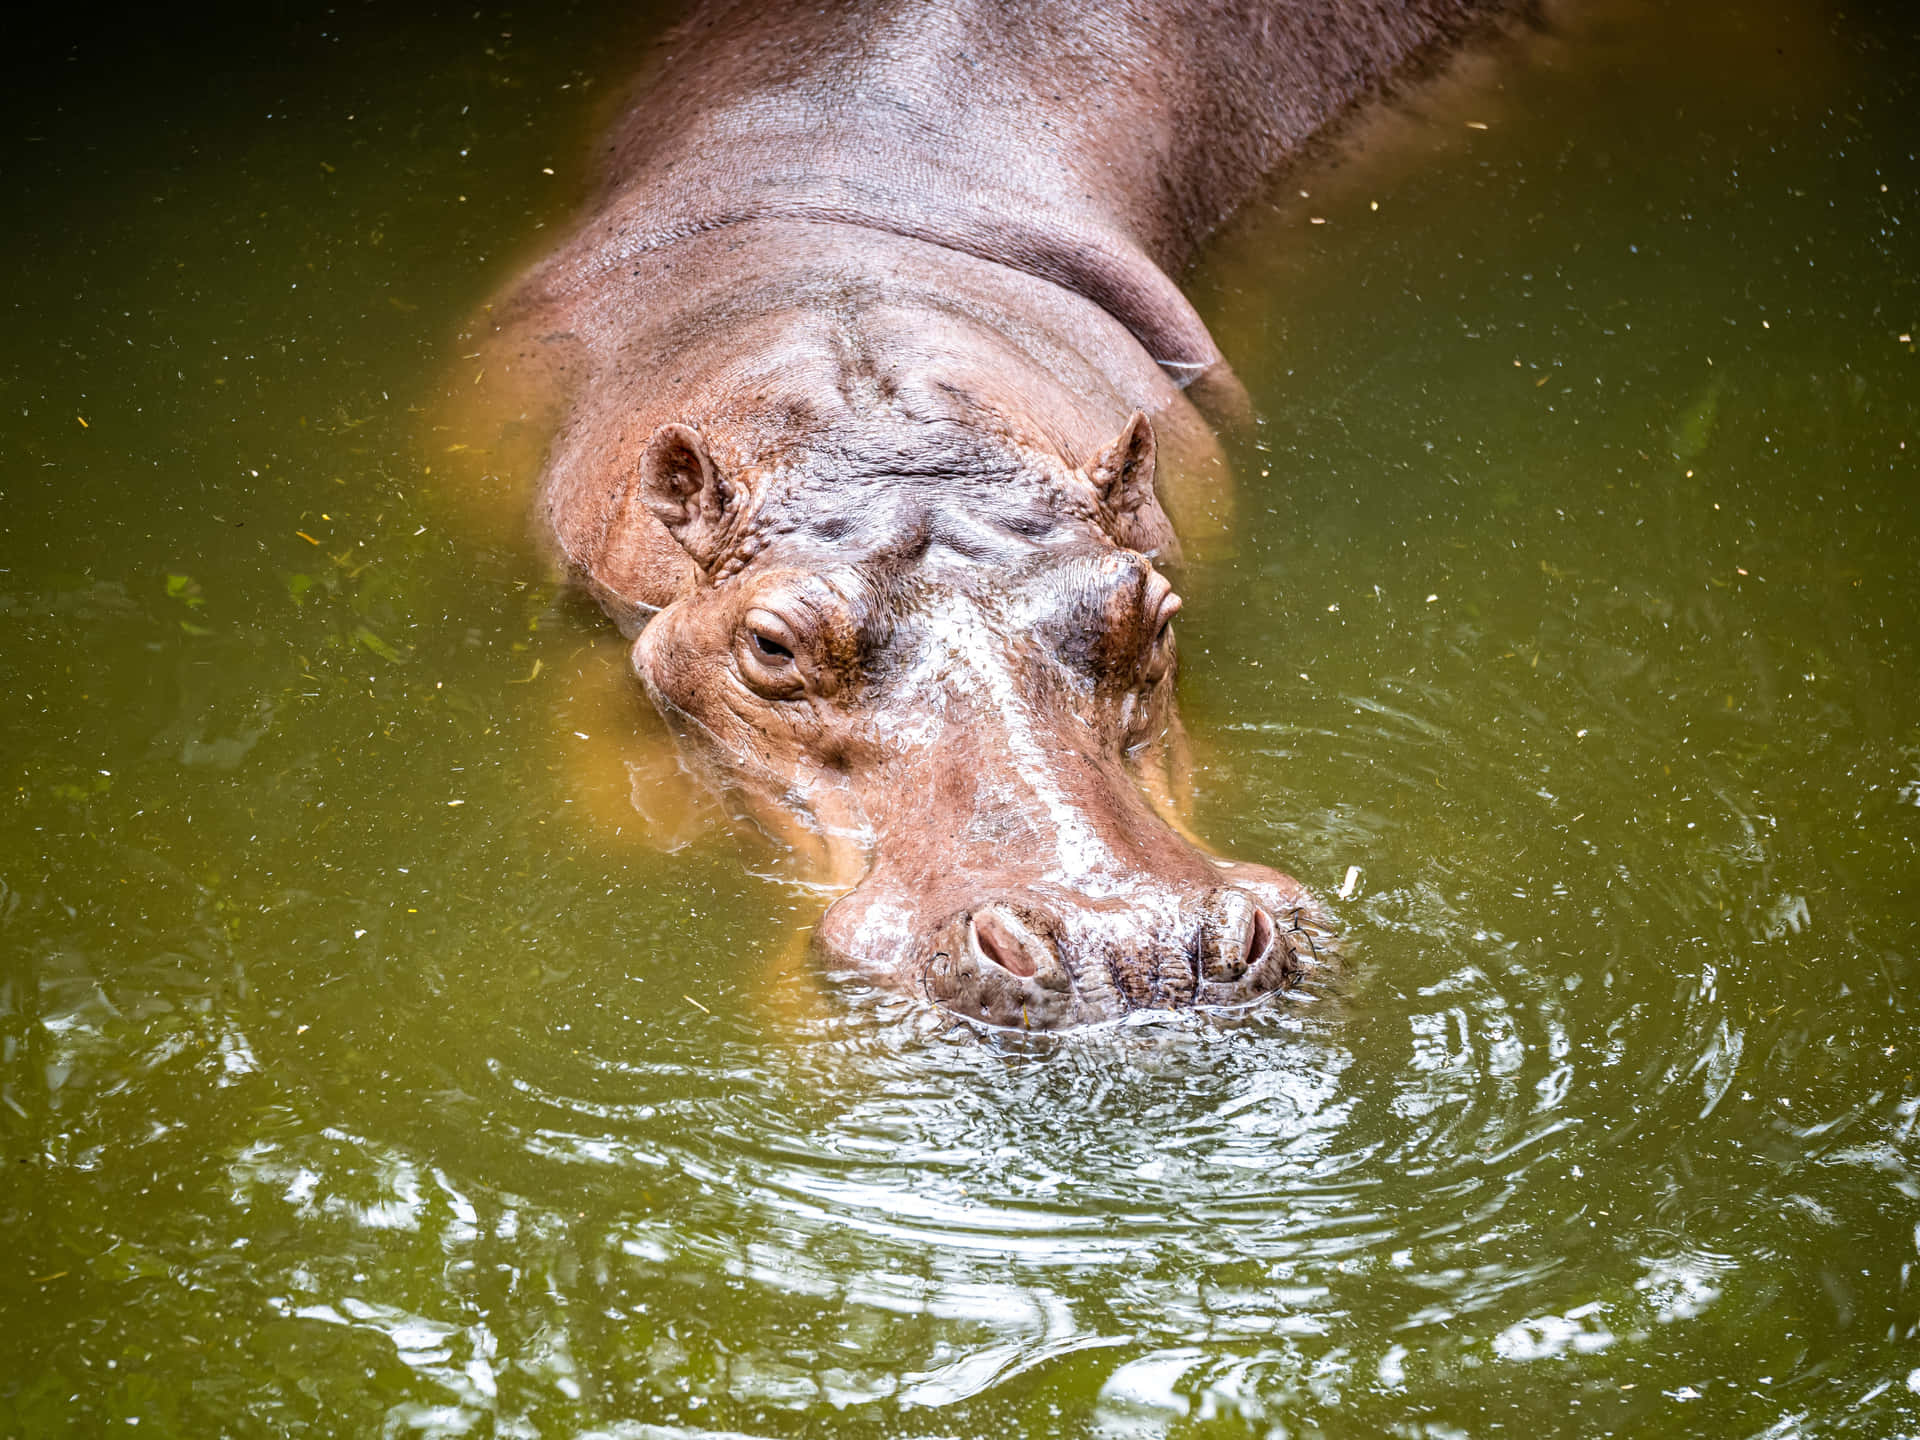 Imagende Un Hipopótamo En Un Río Verde De Agua